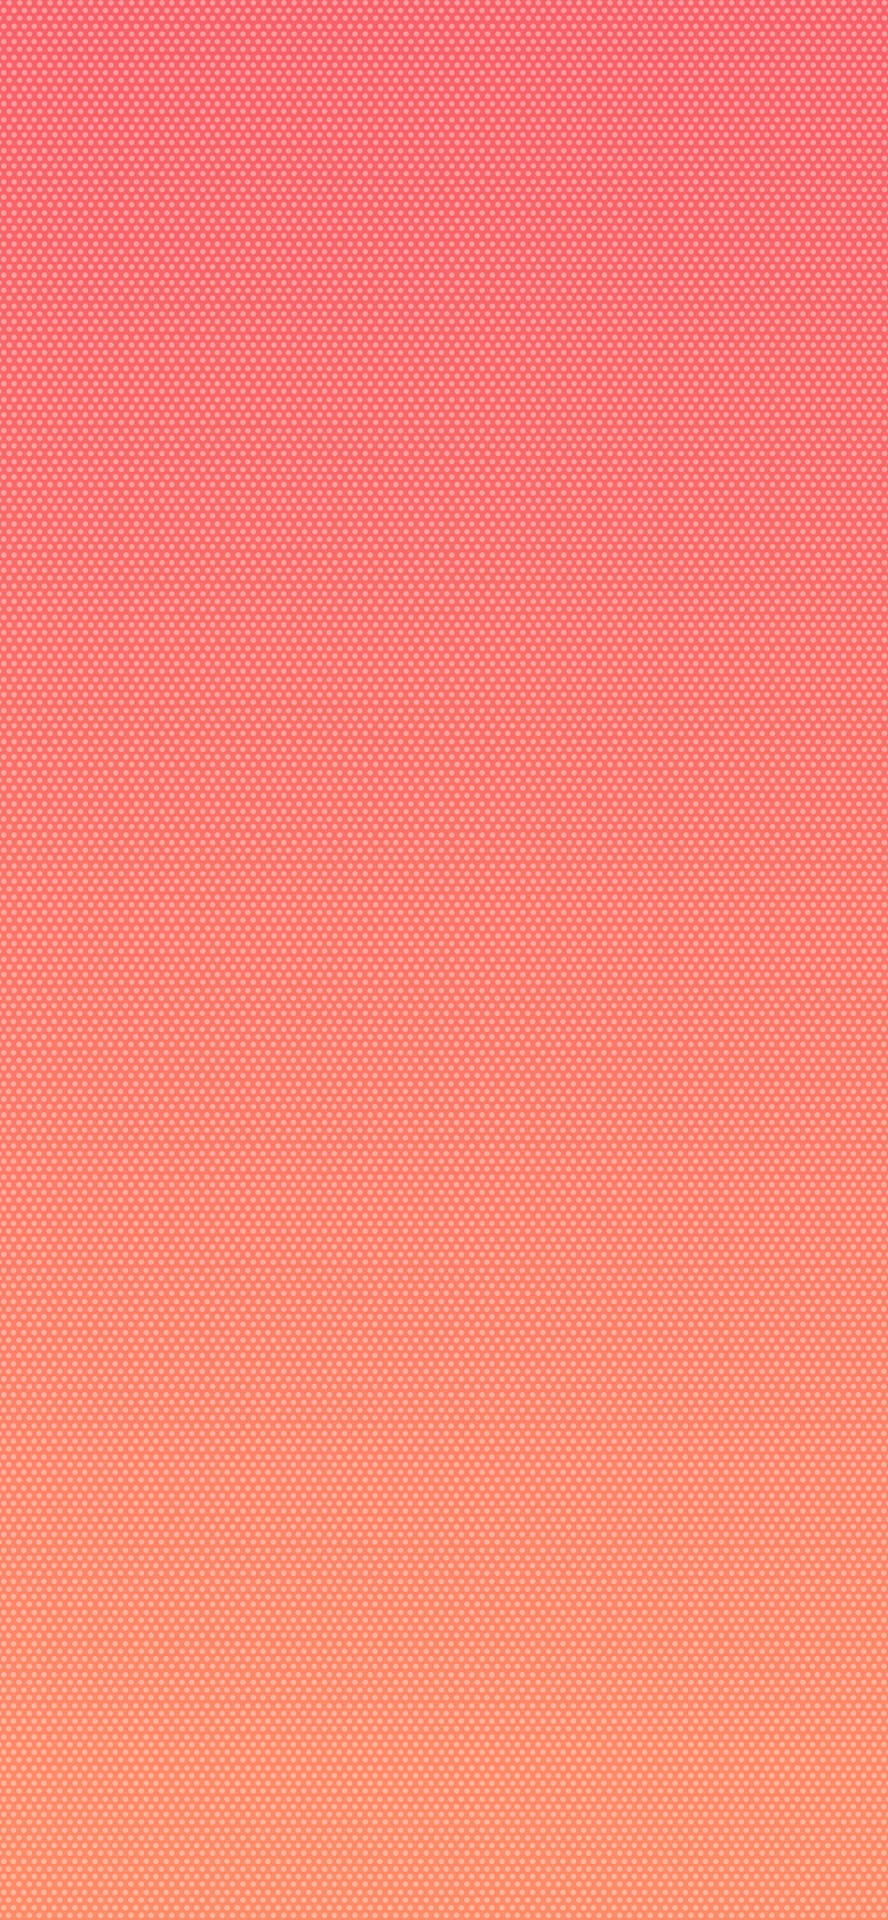 En lyserød og oranger baggrund med et prikket mønster Wallpaper